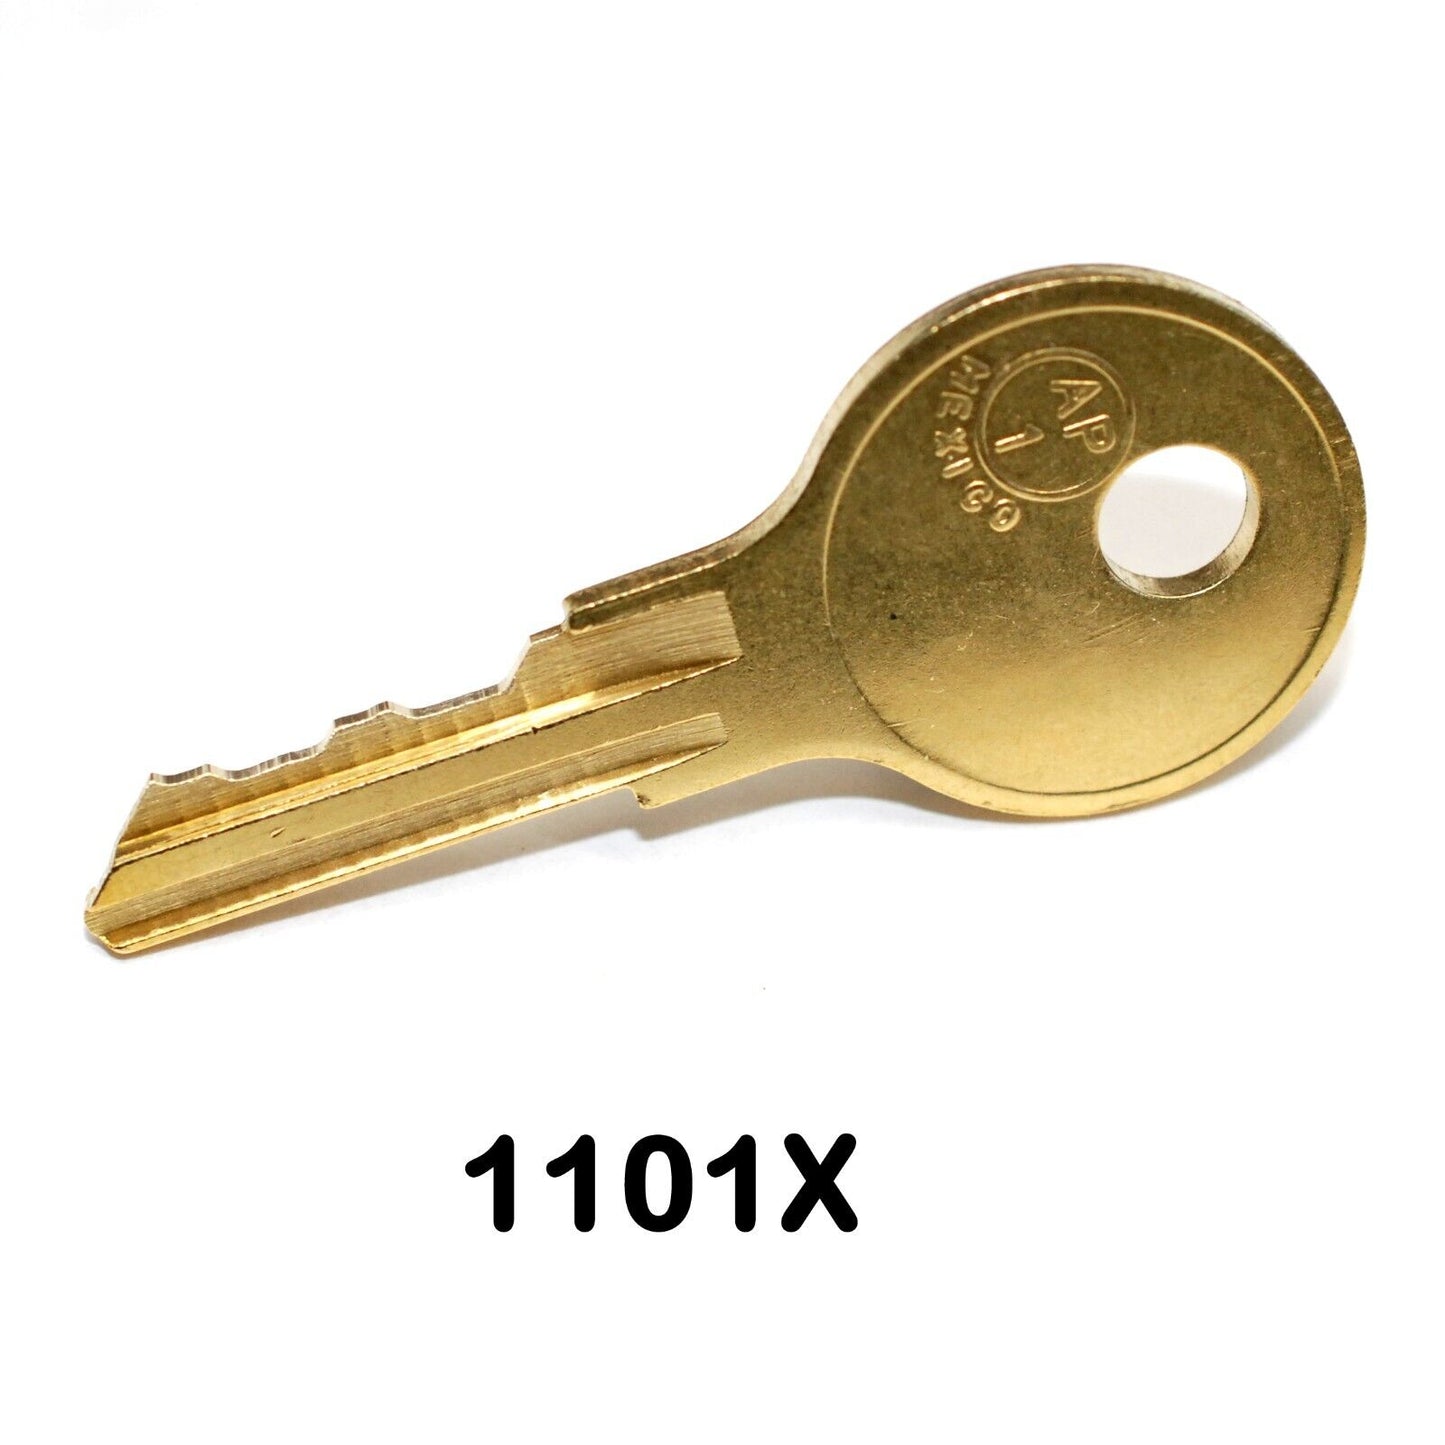 1101X Replacement Key ~ RV Coleman PopUP camper locks StepUp Door key